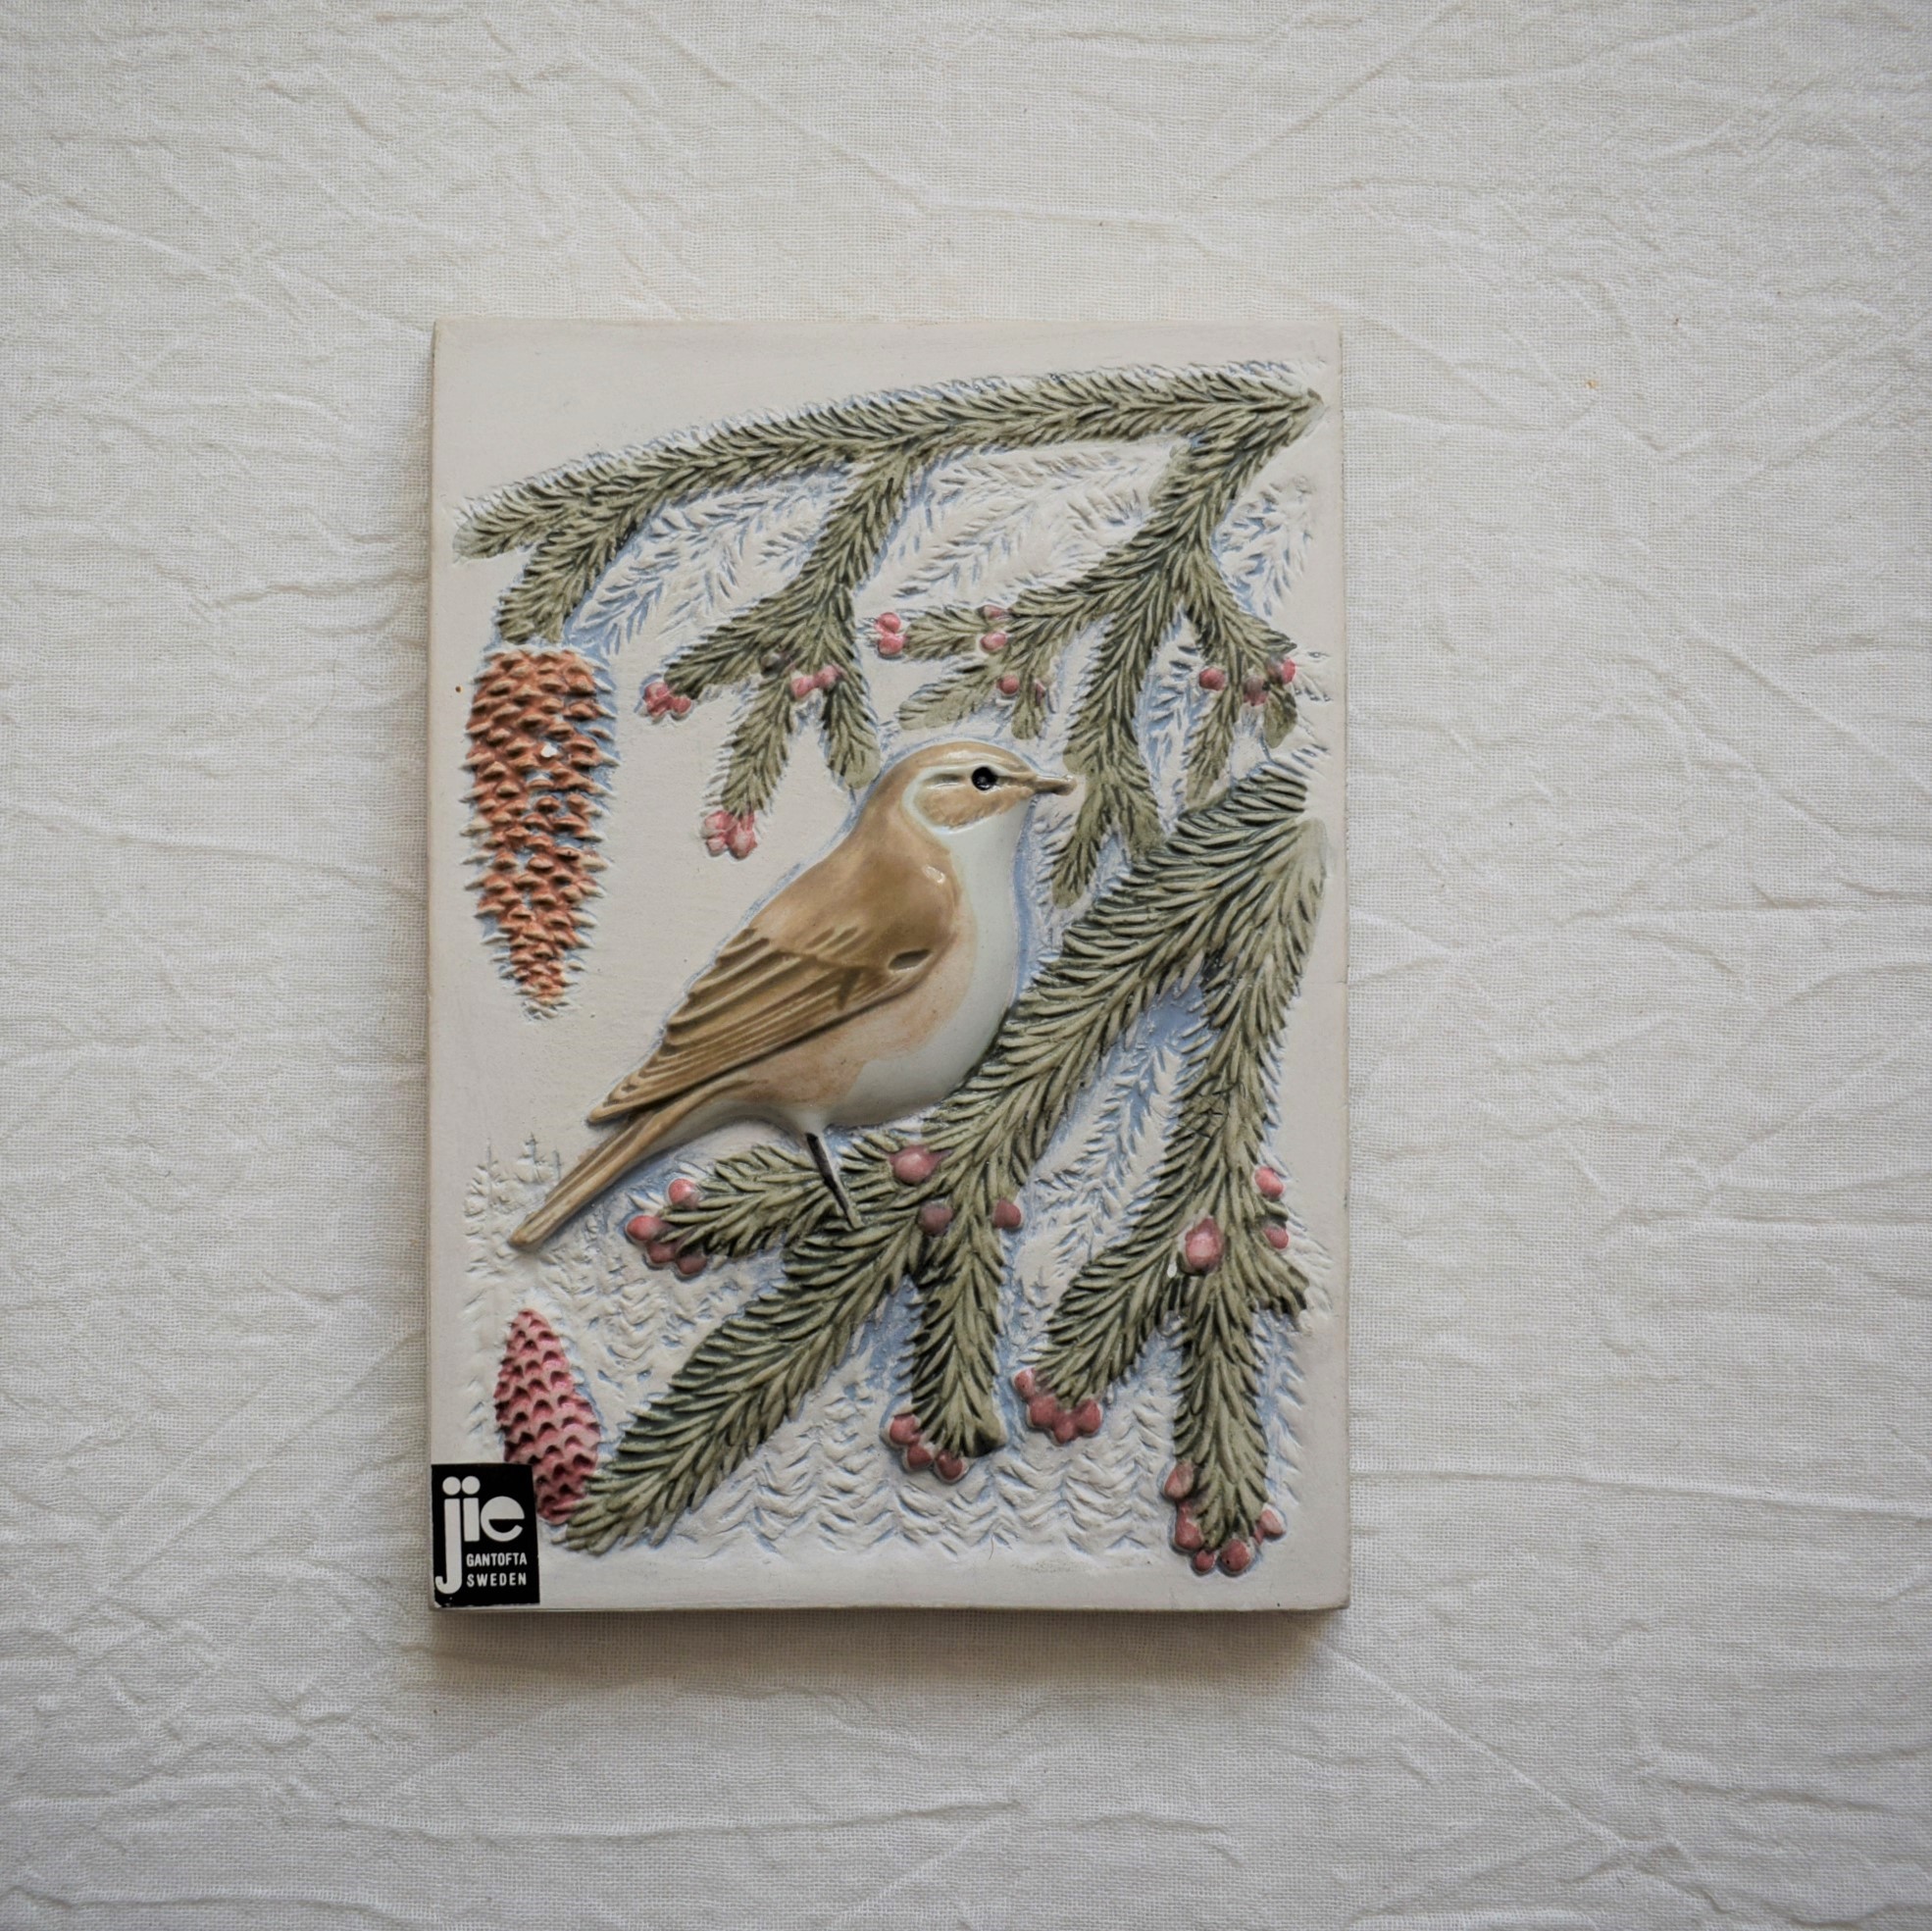 モミの木と鳥の陶板・チフチャフ / Jie Gantofta ・ジィガントフタ ...